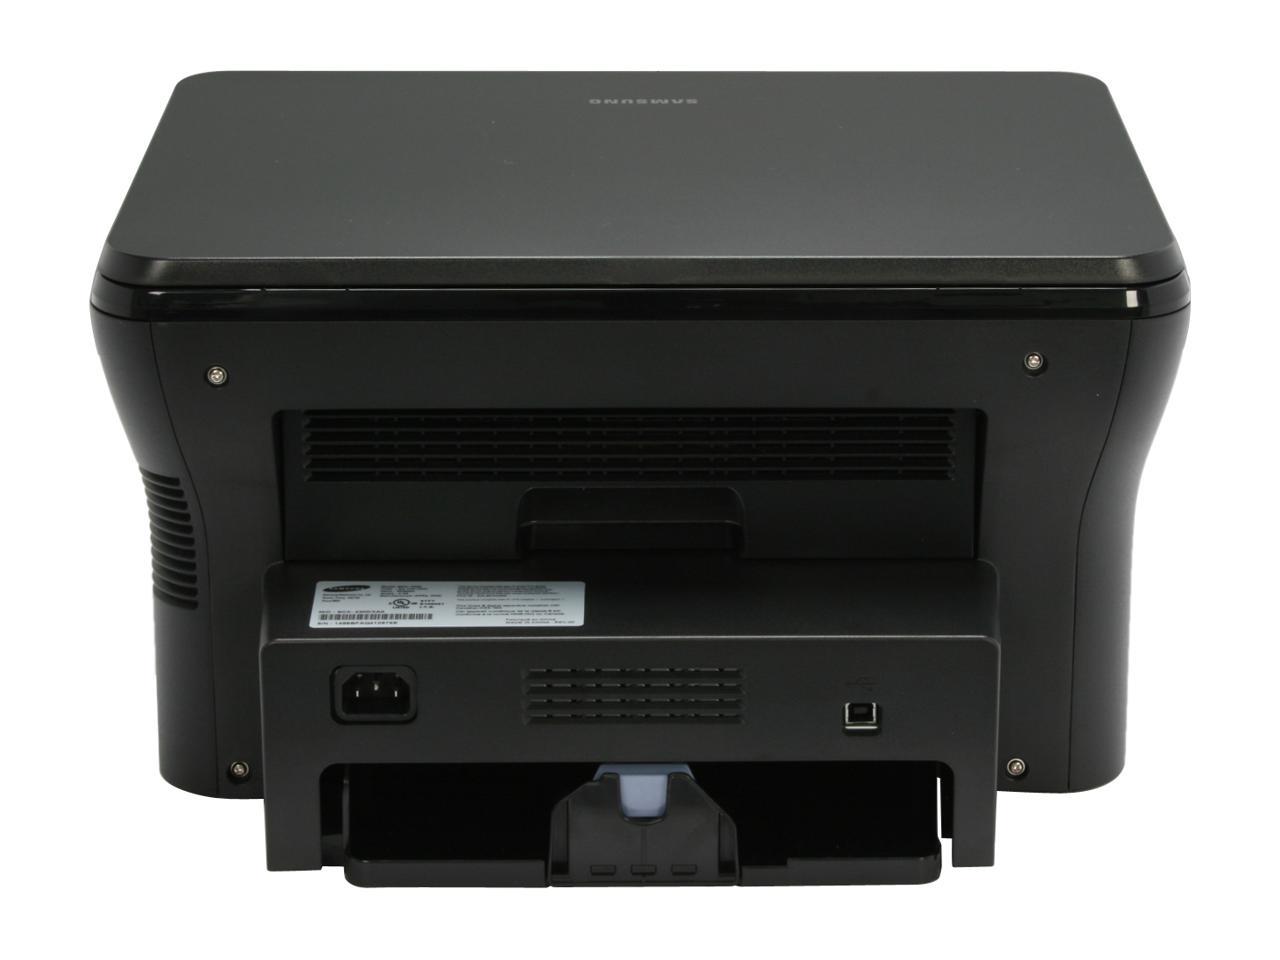 Printer Scx-4300 Samsung For Windows / Driver For Scx-4300 - exevenue